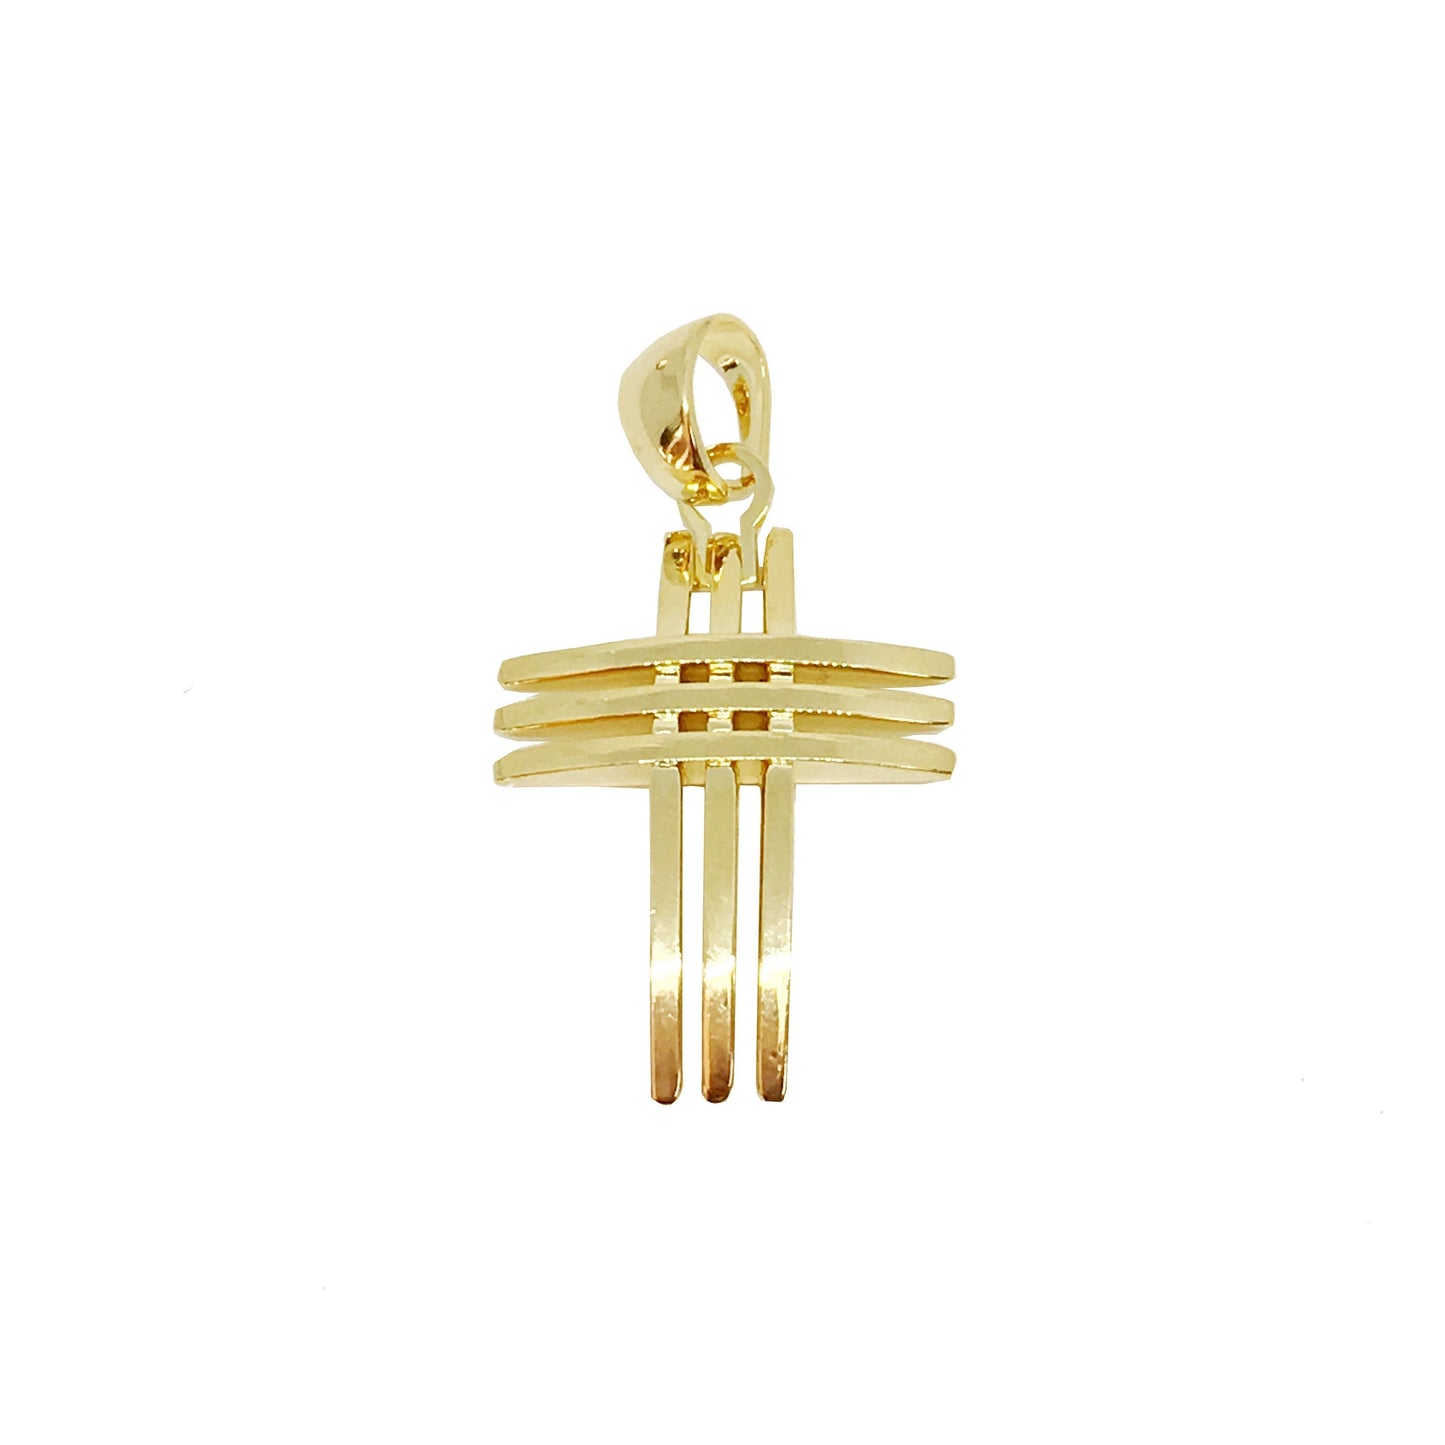 GoldFi 18k Gold Filled Deluxe Unisex Cross Pendant